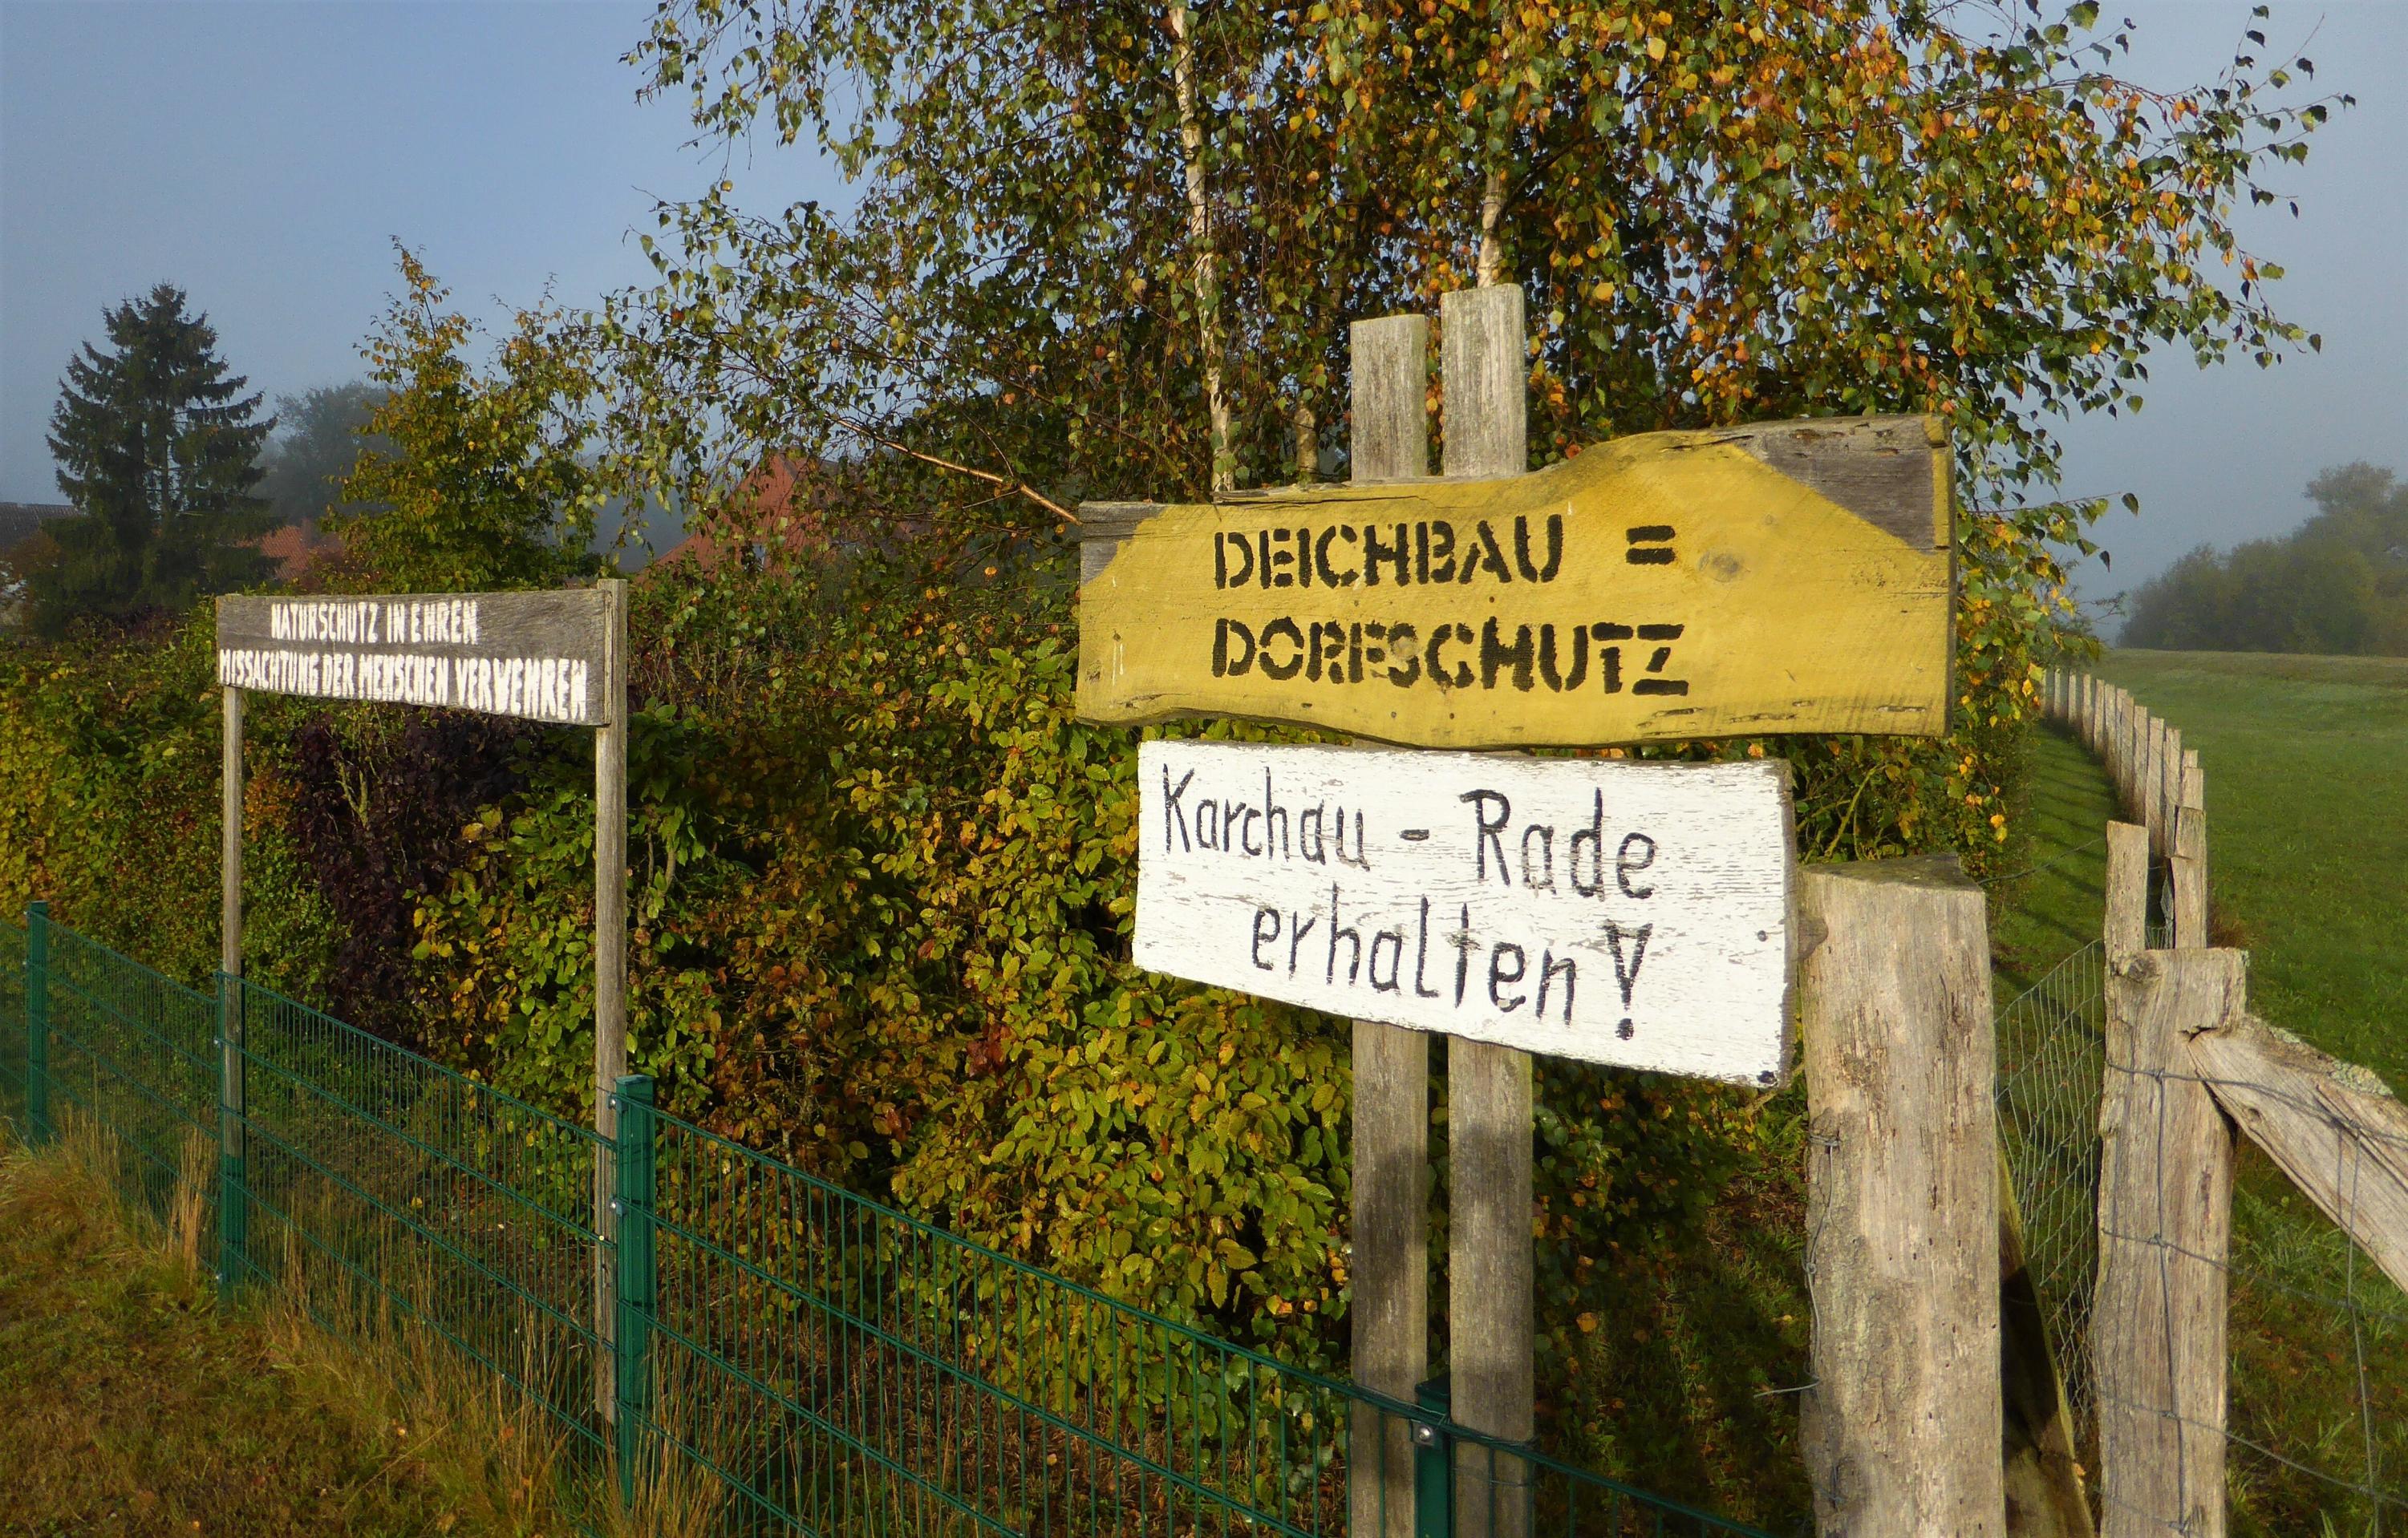 „Deichbau = Dorfschutz“ und „Naturschutz in Ehren – Missachtung der Menschen verwehren“: Dies Inschriften stehen auf Holzlatten am Rand eines Grundstückzauns, hinter dem rechts ein Deichabschnitt zu sehen ist.